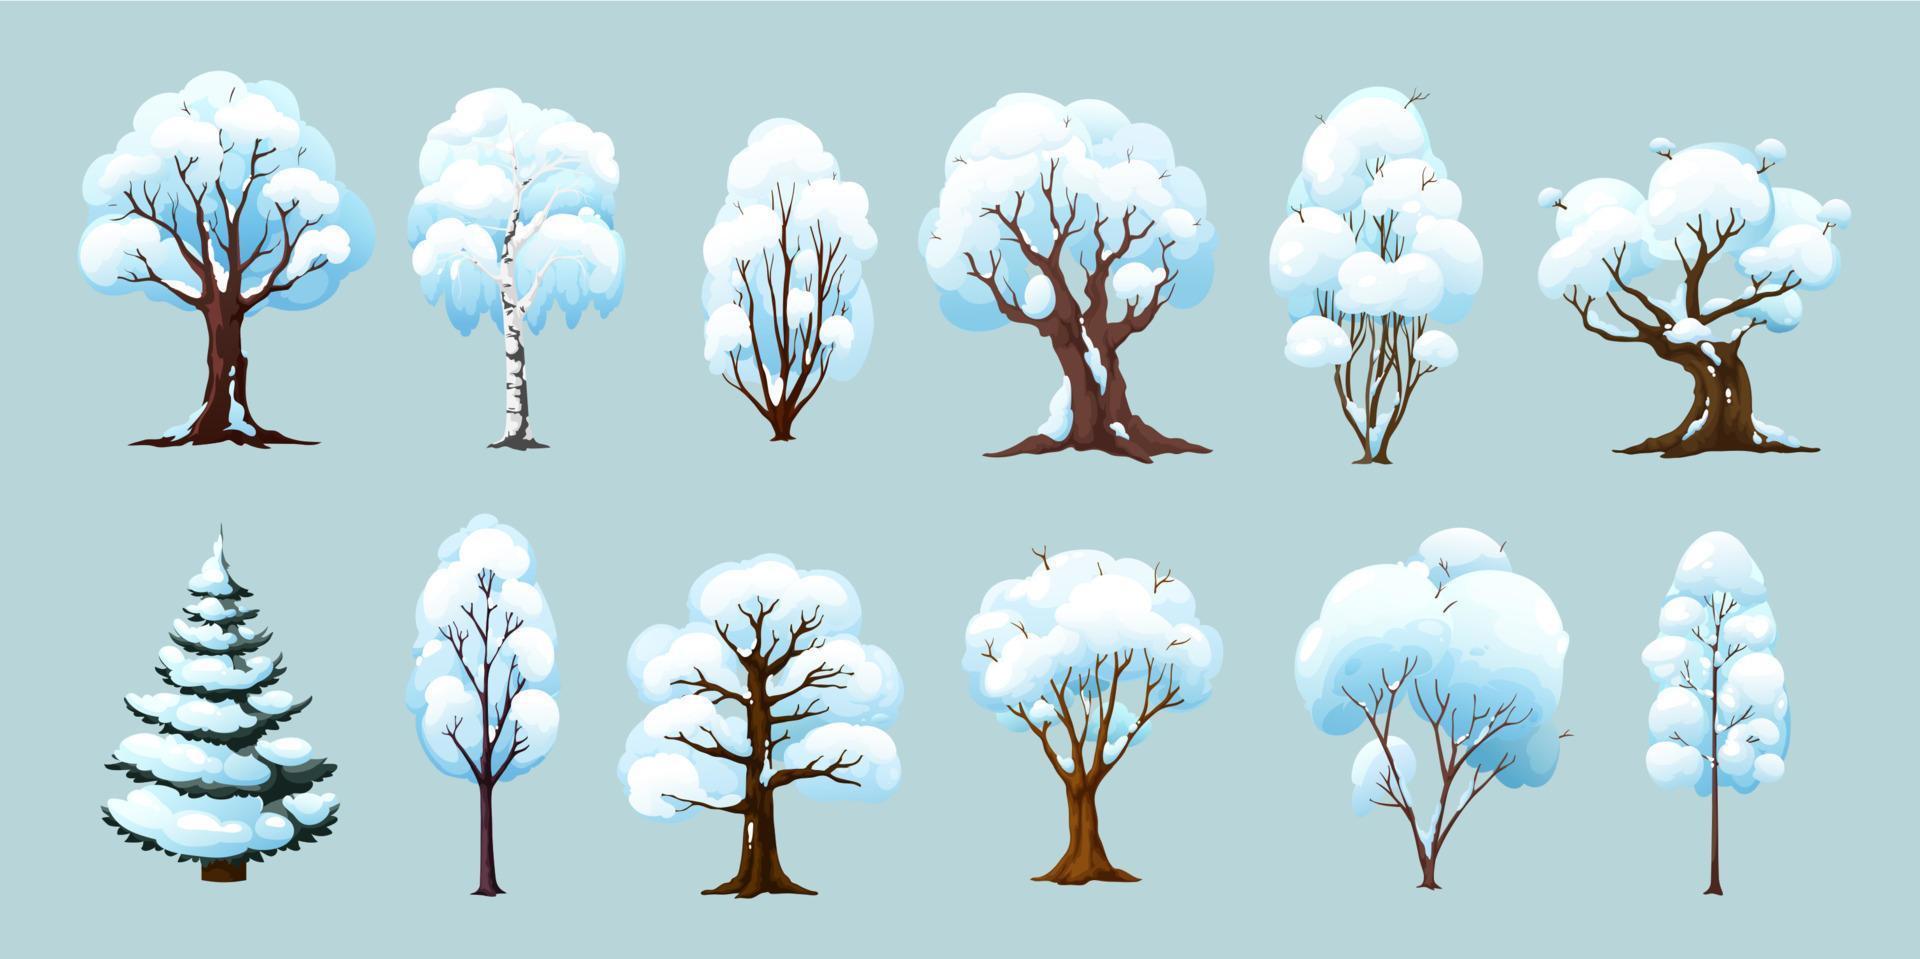 karikaturwinterbäume, isolierte pflanzen mit schnee vektor